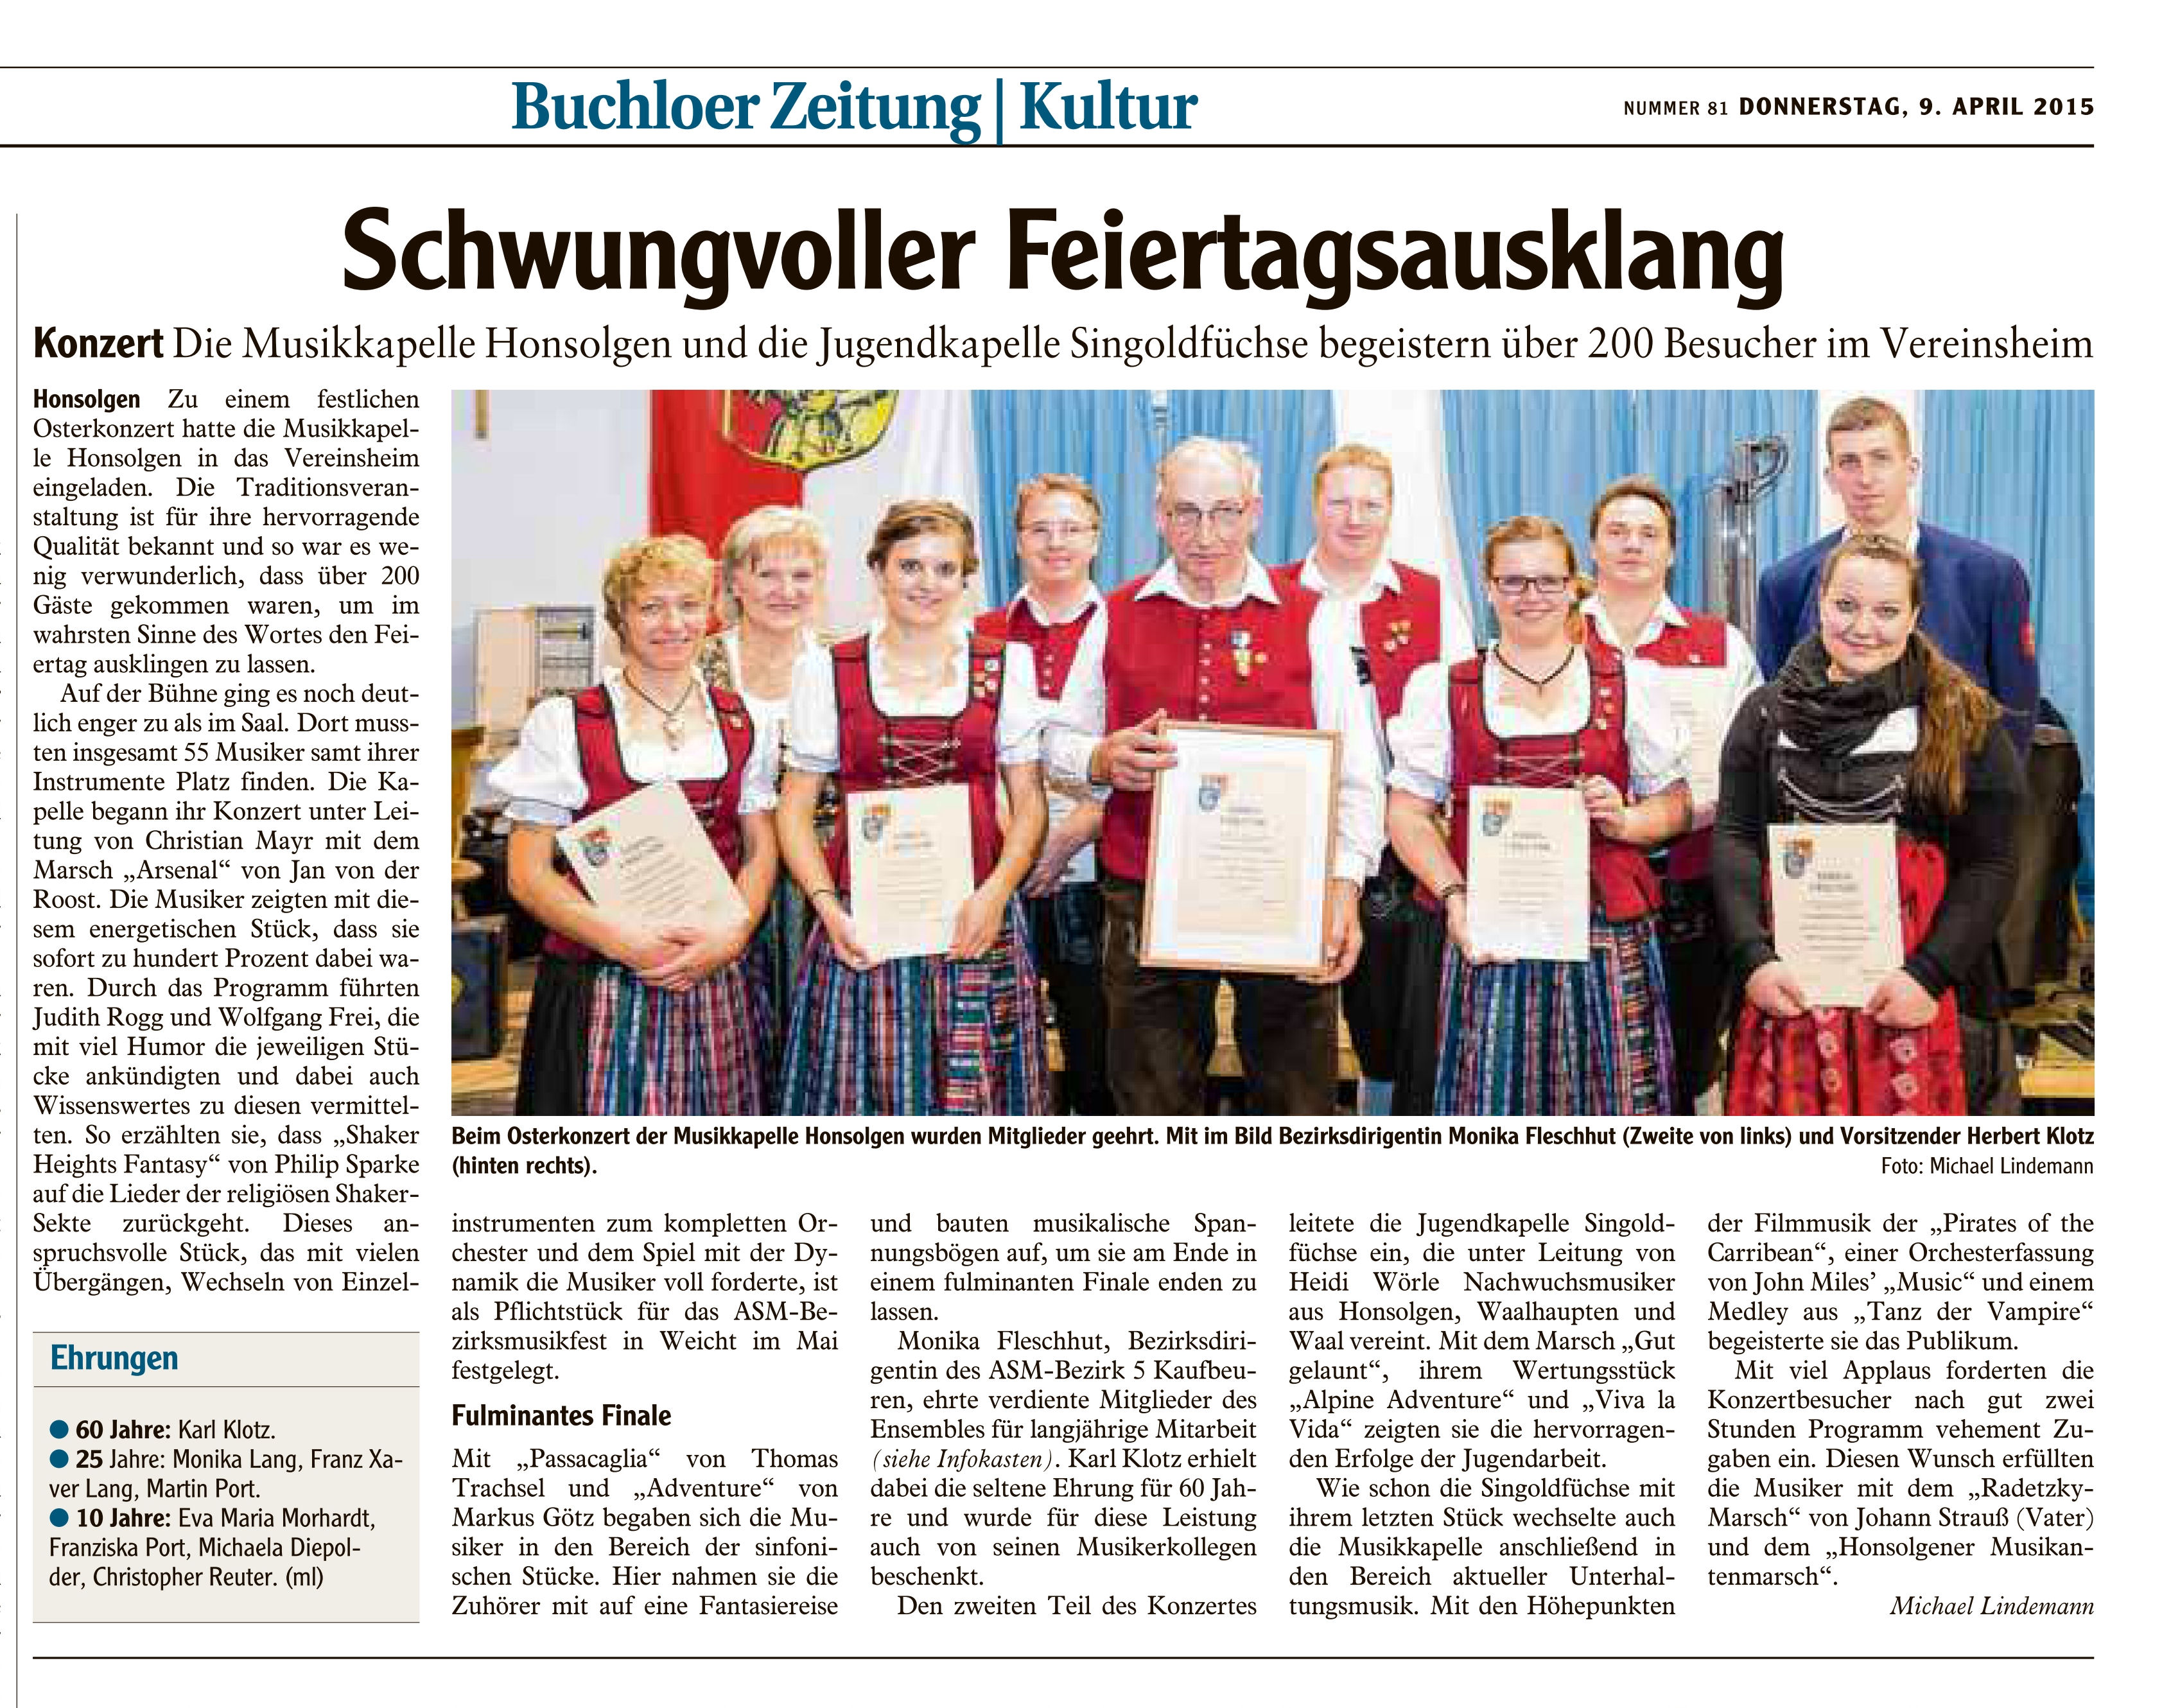 Osterkonzert der Musikkapelle Honsolgen 2015_Bericht aus Buchloer Zeitung